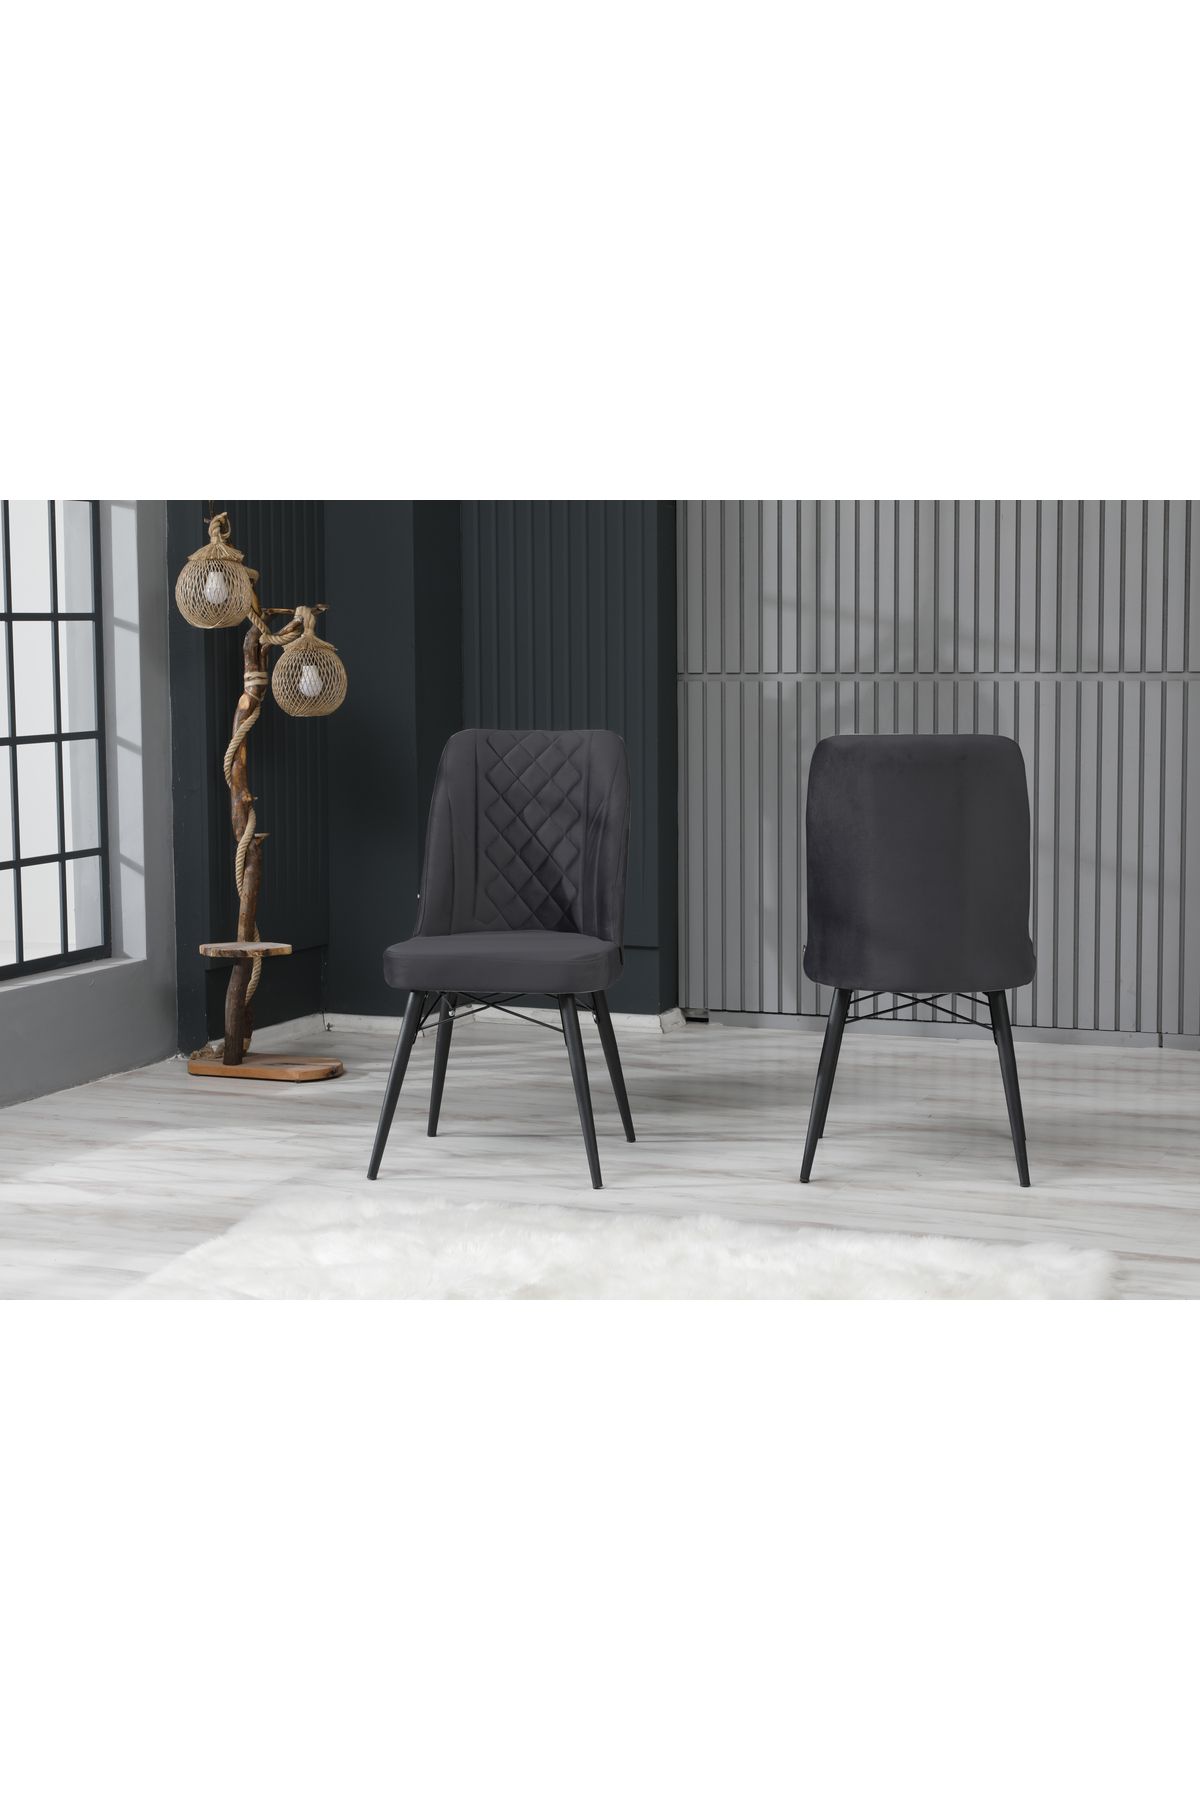 İNCİMO Cafe Salon Mutfak Sandalyeleri Seher Kptn Antrasit Siyah Ayaklı